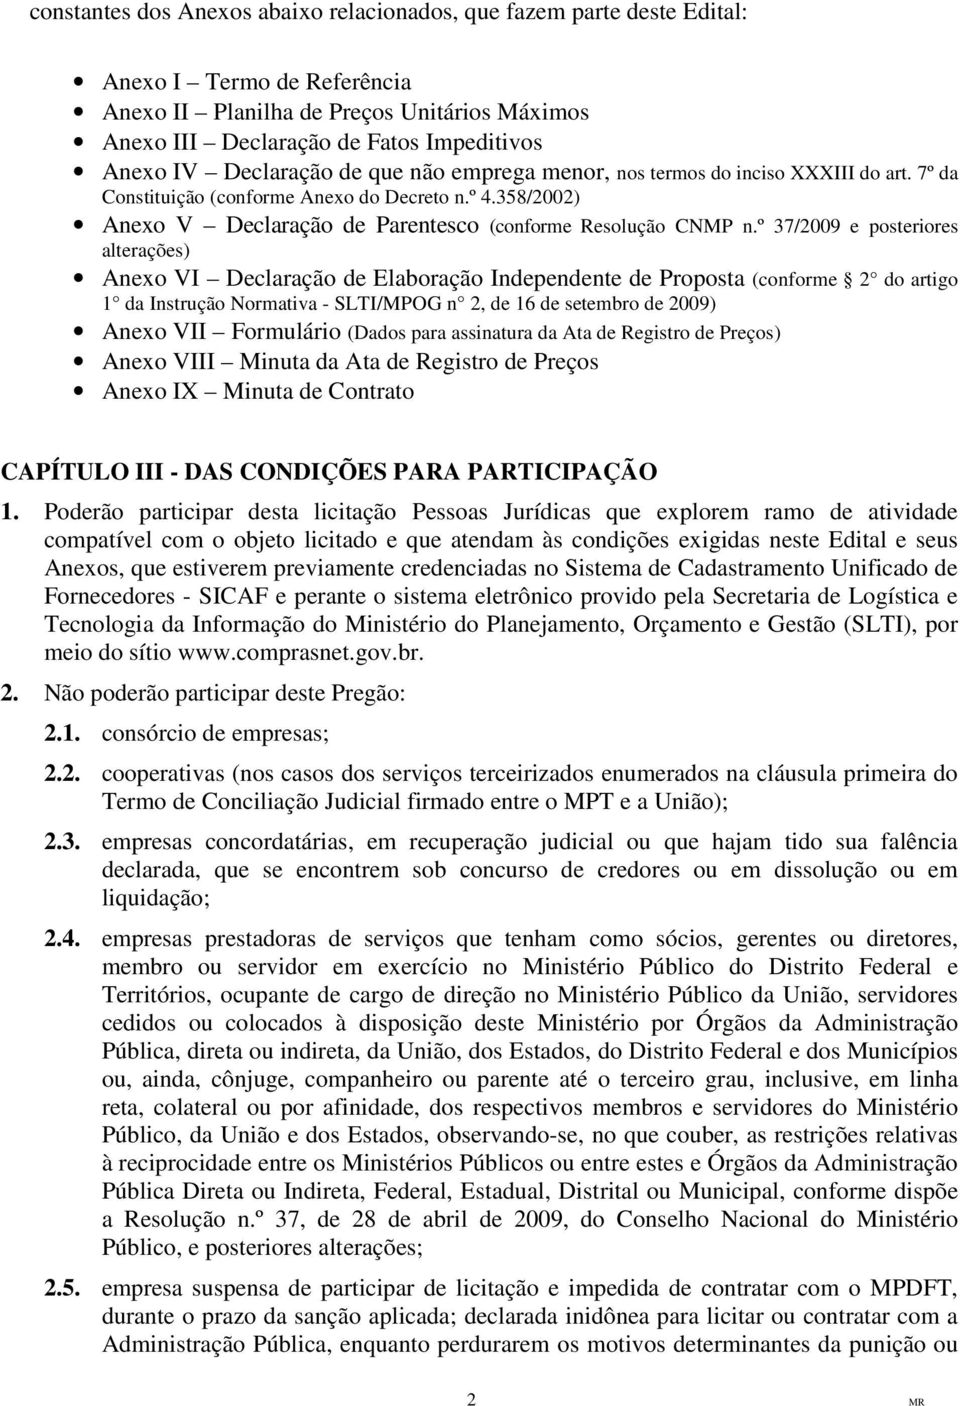 º 37/2009 e posteriores alterações) Anexo VI Declaração de Elaboração Independente de Proposta (conforme 2 do artigo 1 da Instrução Normativa - SLTI/MPOG n 2, de 16 de setembro de 2009) Anexo VII